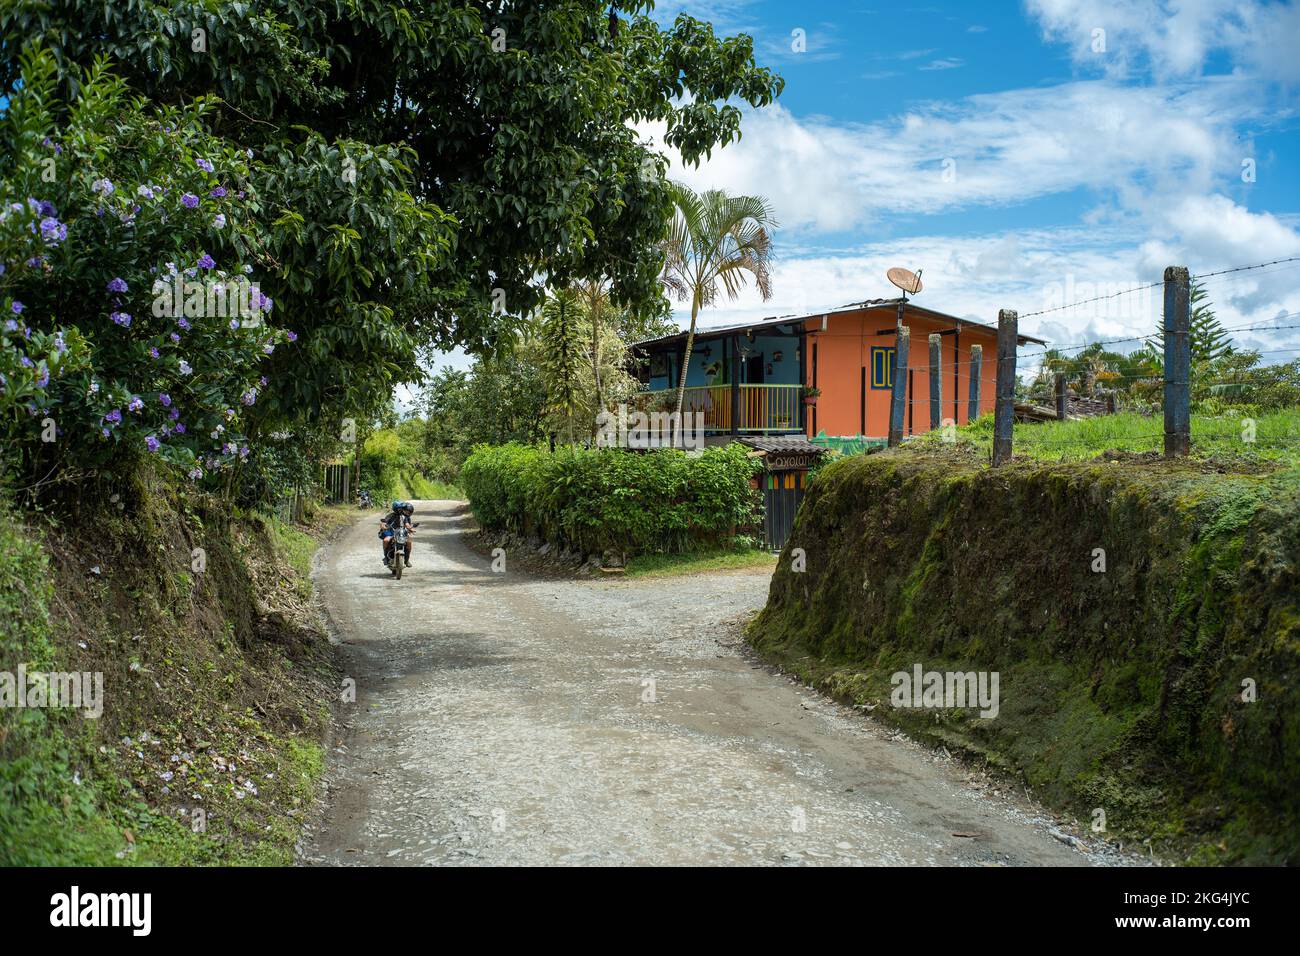 Filandia, Quindio, Colombia - Giugno 6 2022: Una motocicletta che passa attraverso una strada sterrata circondata da molti alberi, piante e una casa arancione Foto Stock